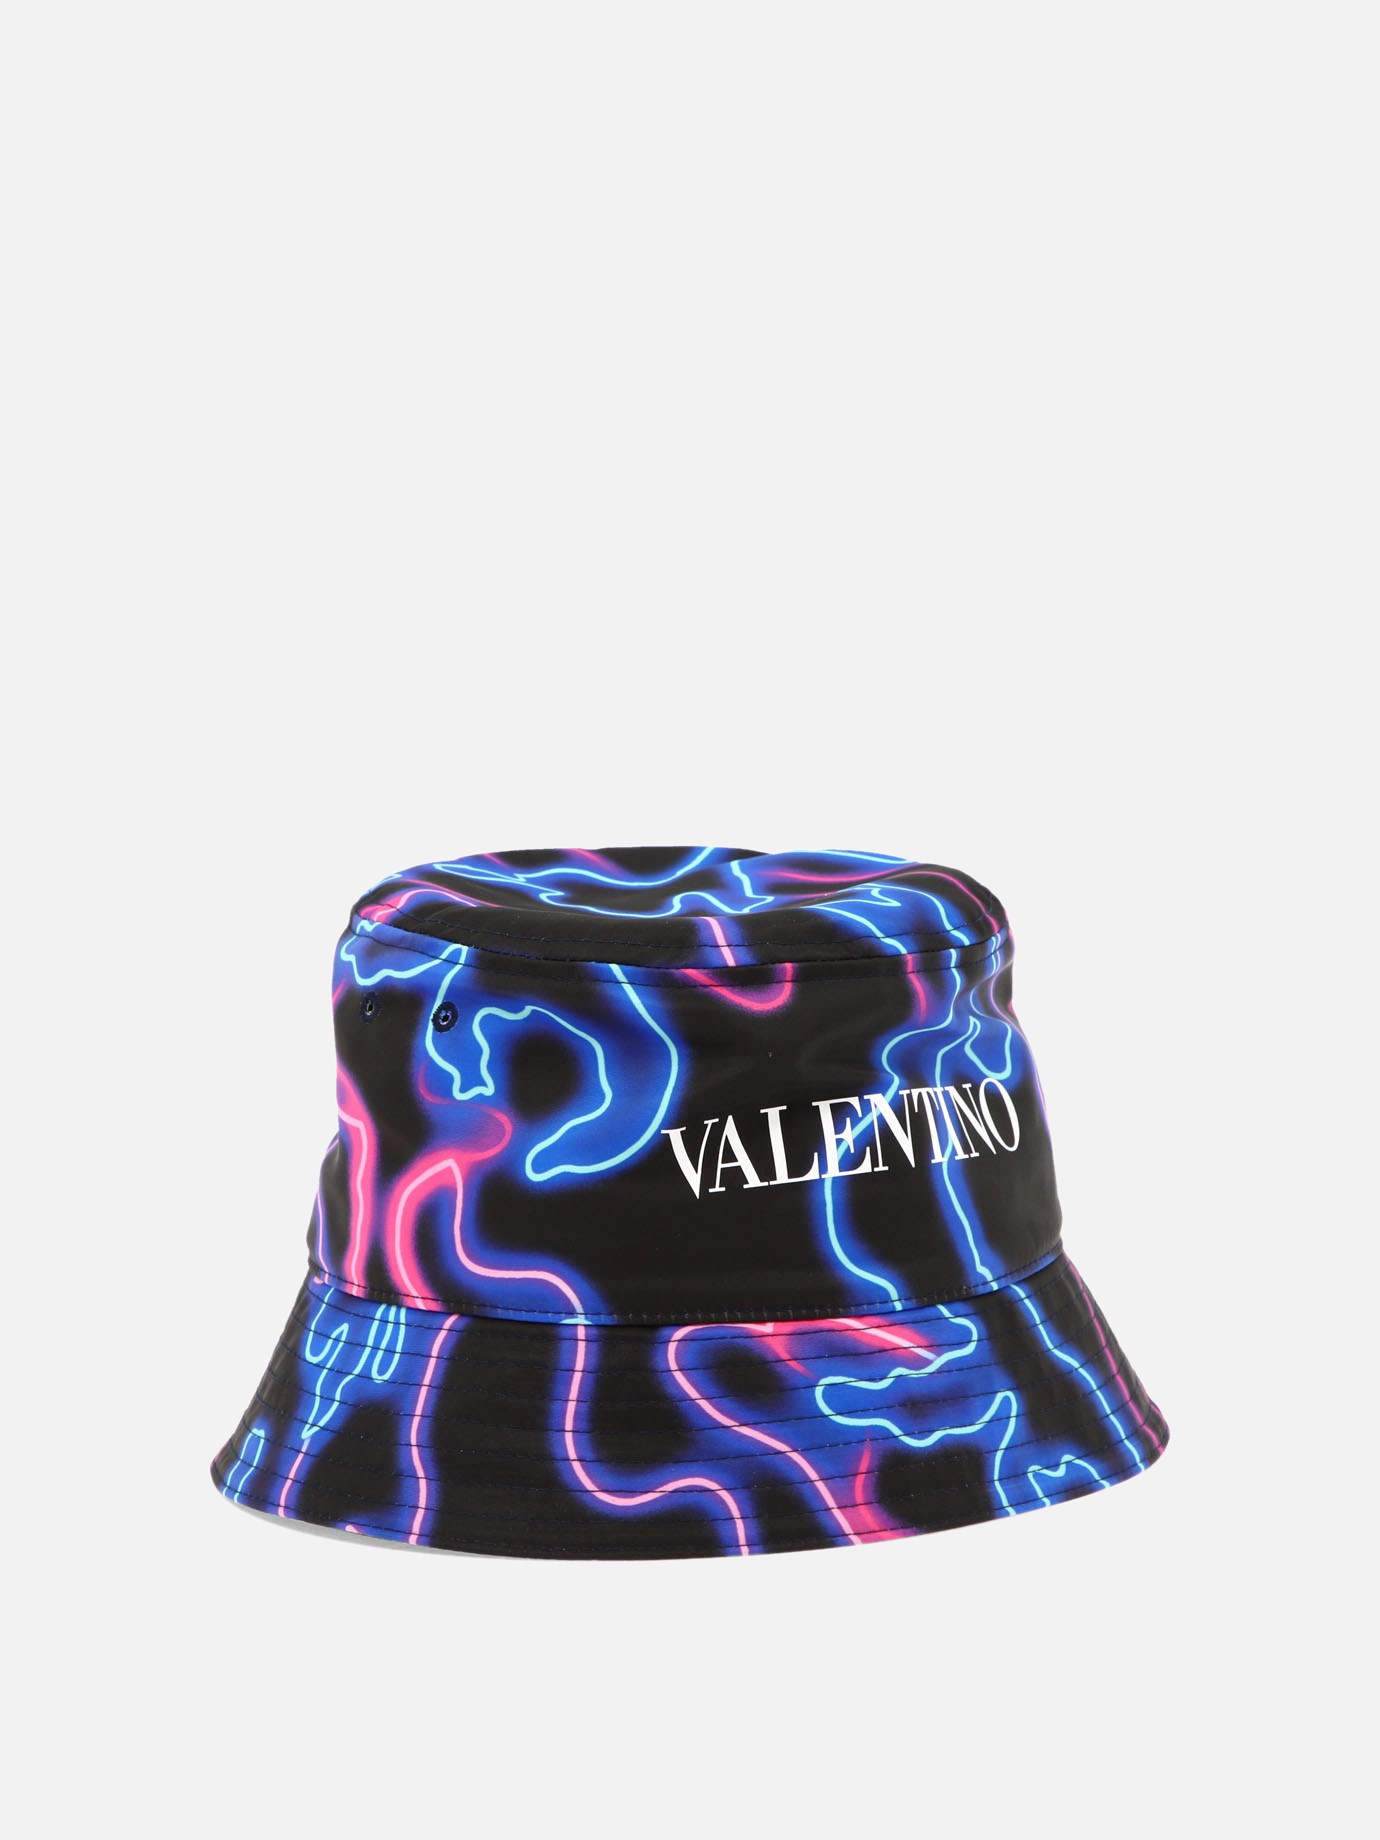  Neon Camou  bucket hat by Valentino Garavani